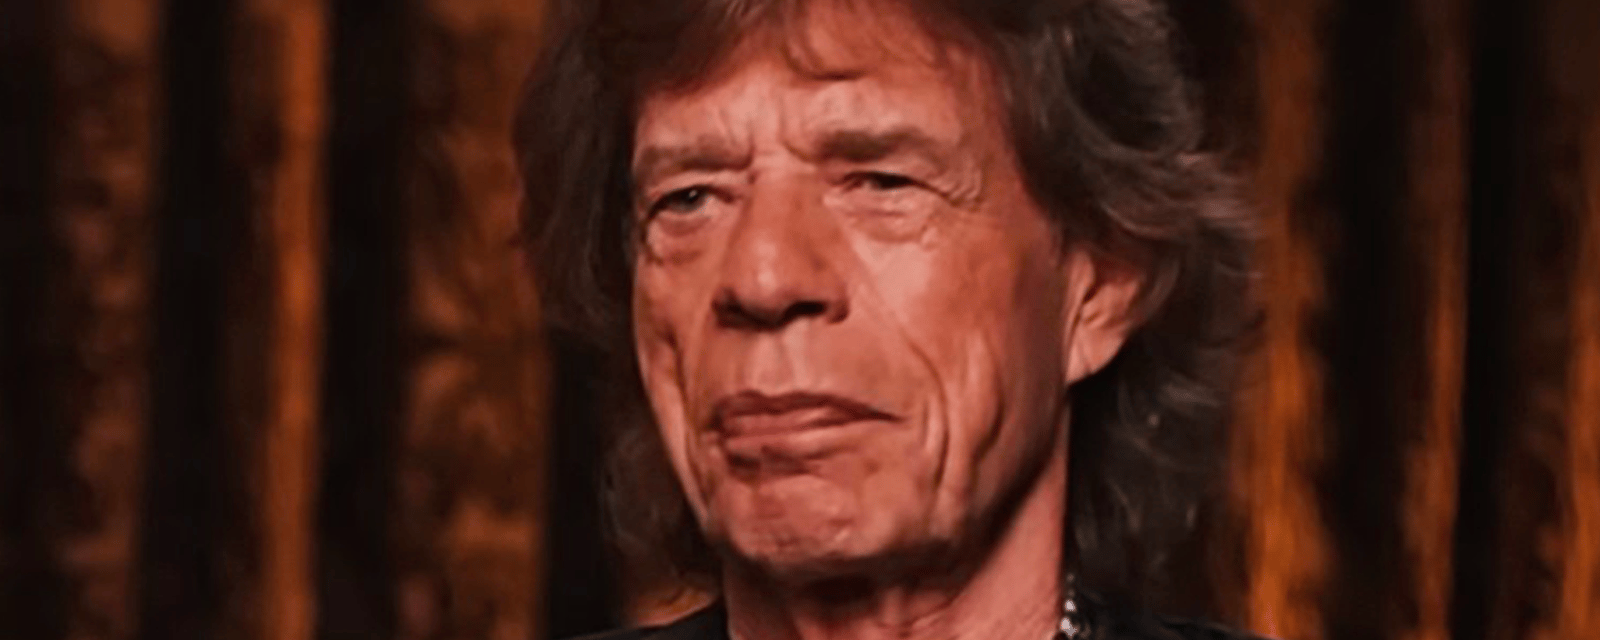 Mick Jagger ne prévoit pas de donner son immense fortune à ses enfants